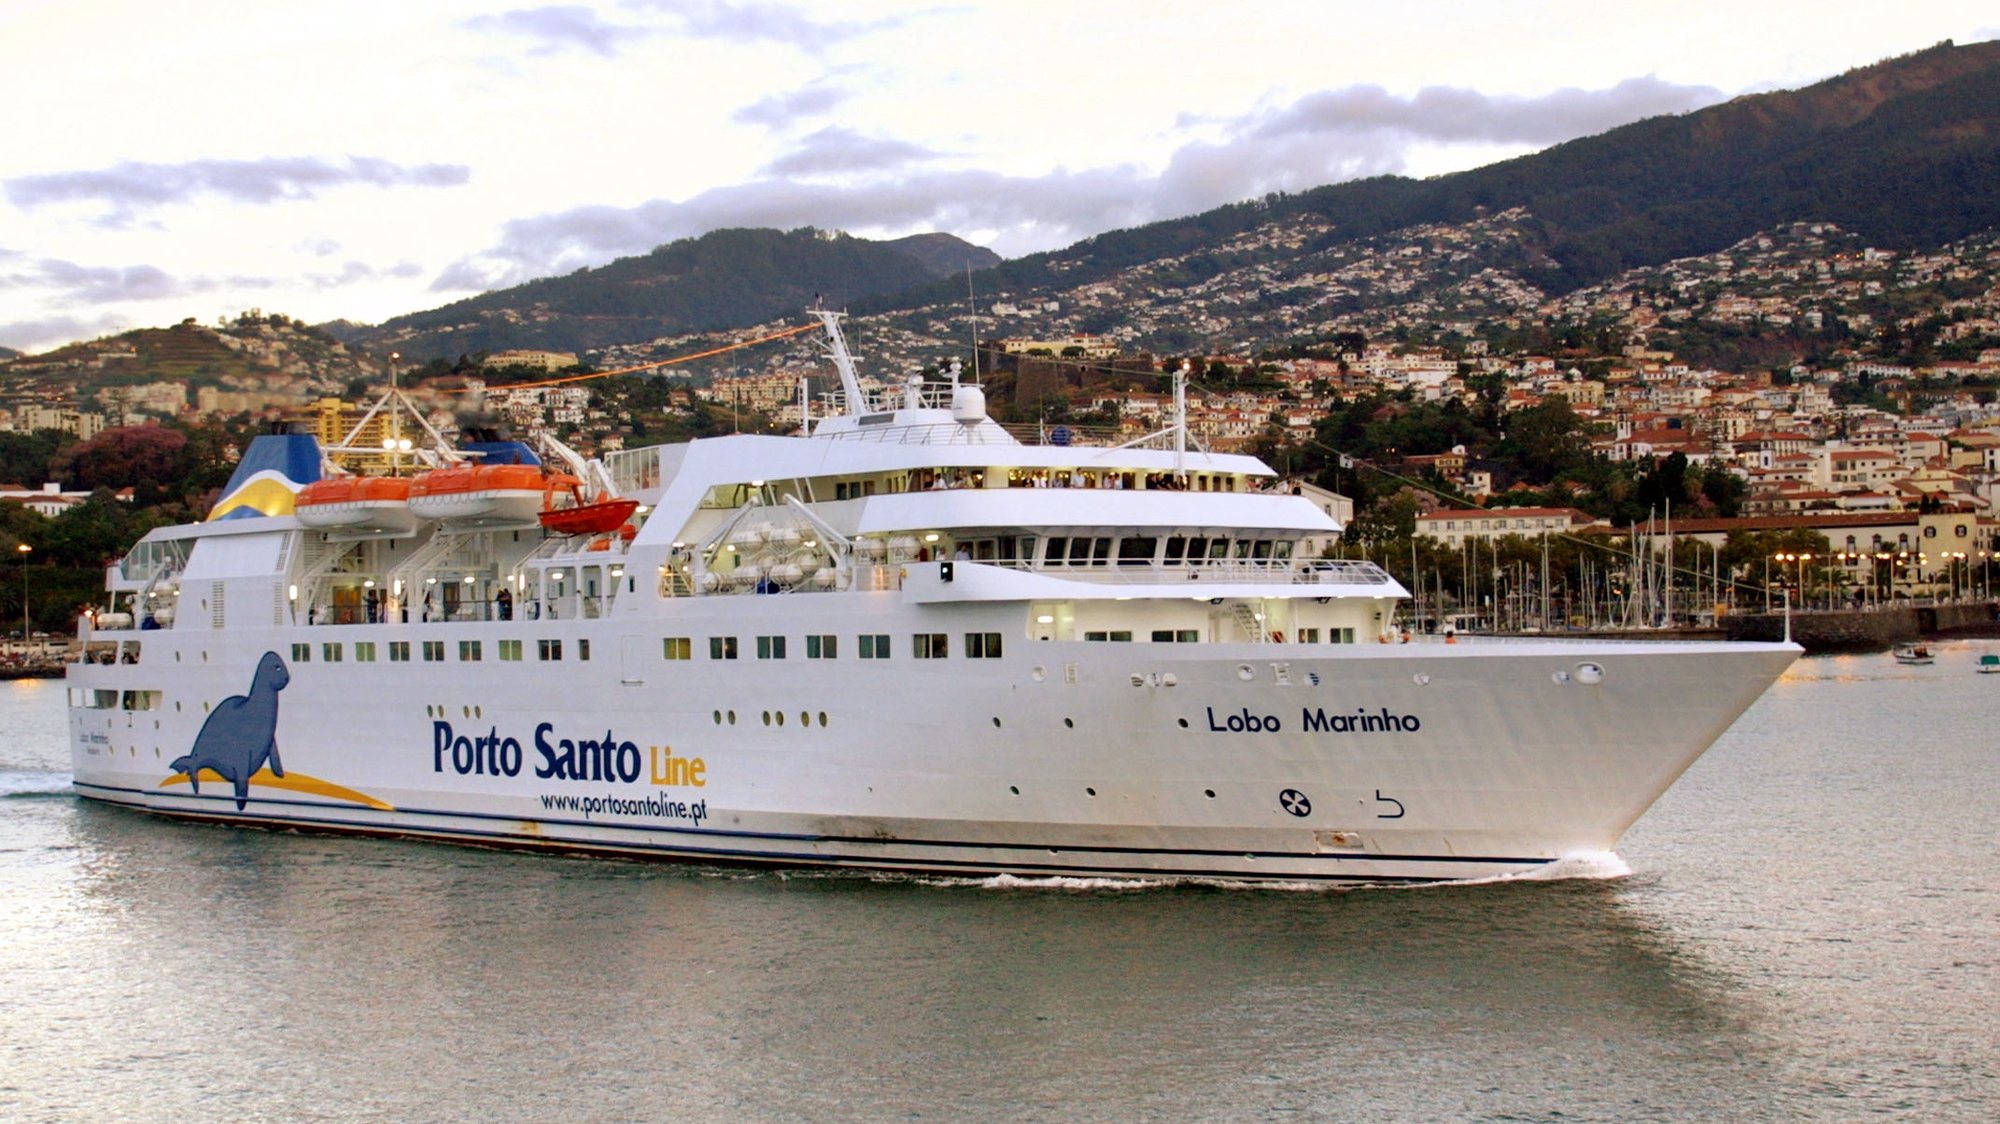 20031004:FUNCHAL:Navio Lobo Marinho, da Porto Santo Line, e o maior e principal meio de transporte maritimo entre as ilhas da Madeira e Porto Santo. FOTO HOMEM DE GOUVEIA / LUSA